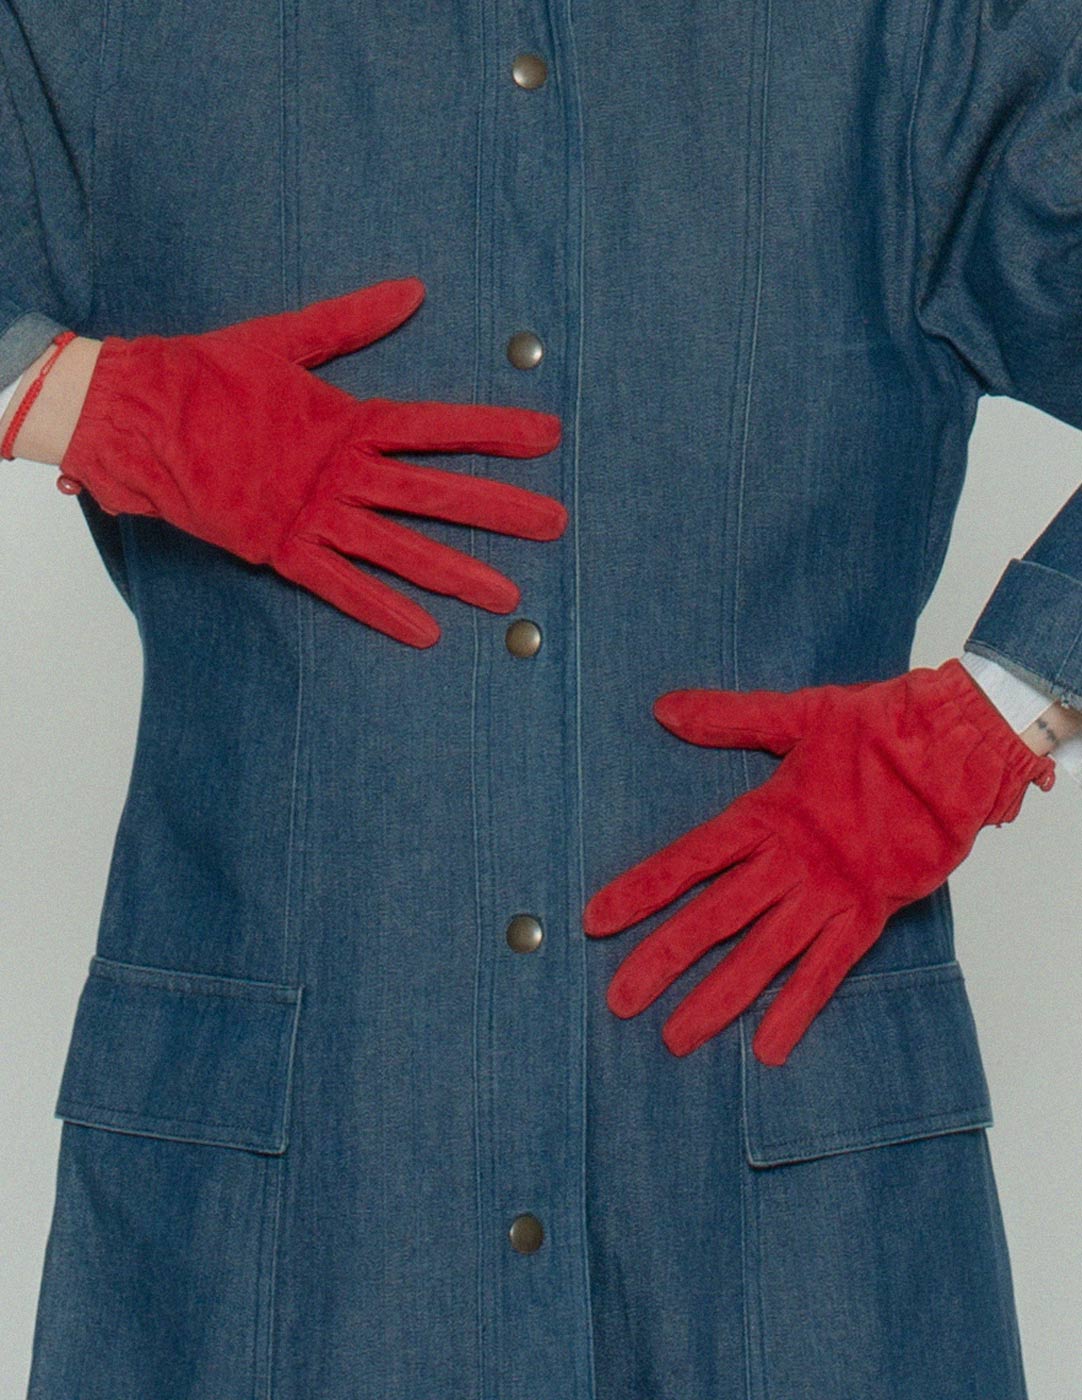 Prada red suede gloves detail